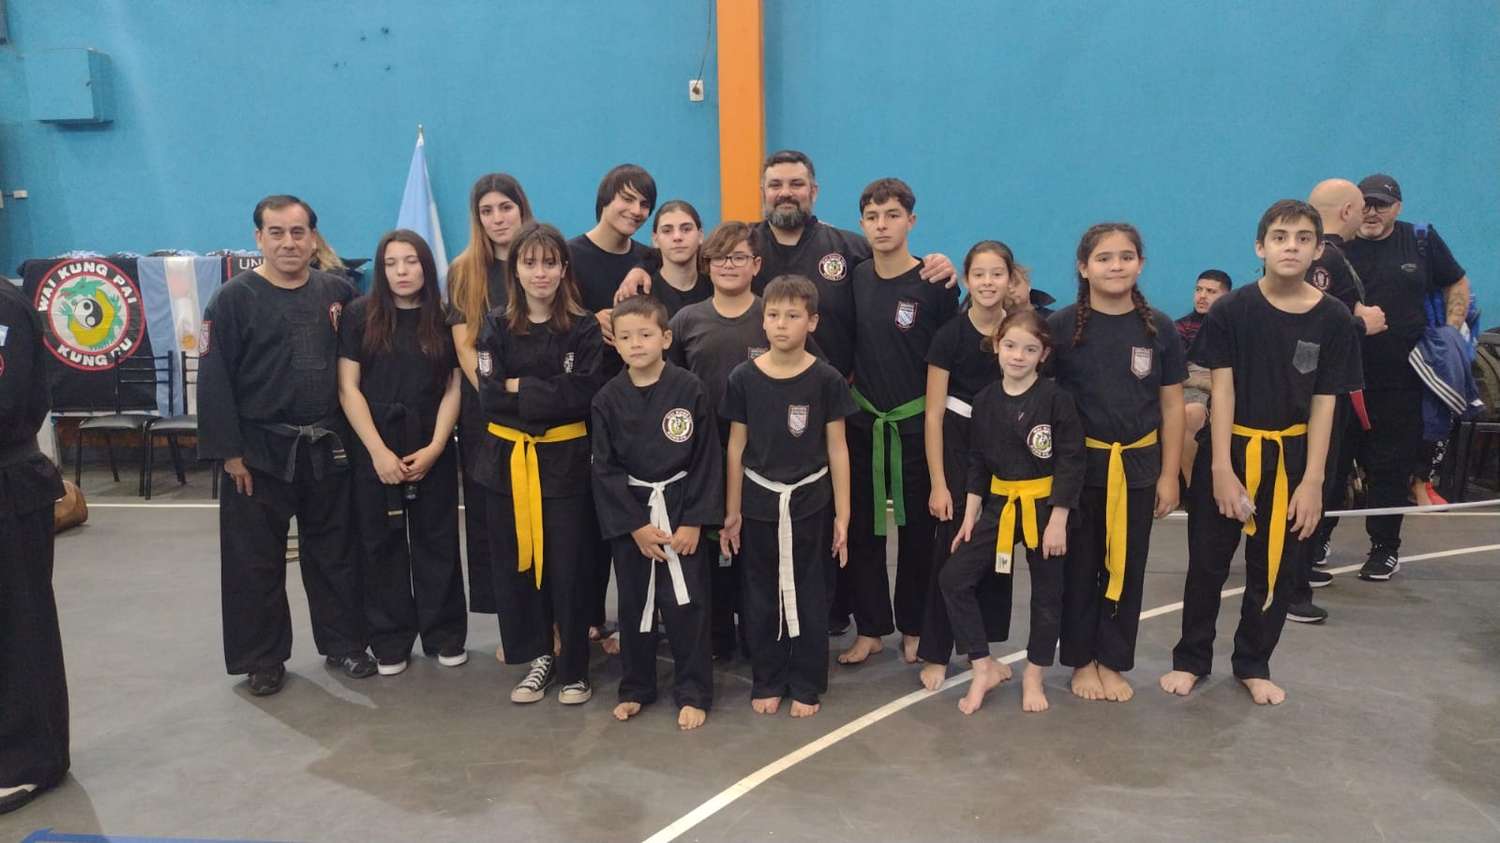 Esta es la Escuela de Kung Fu del profesor Fabián Díaz que se presentó en el torneo de José Marmol, provincia de Buenos Aires.